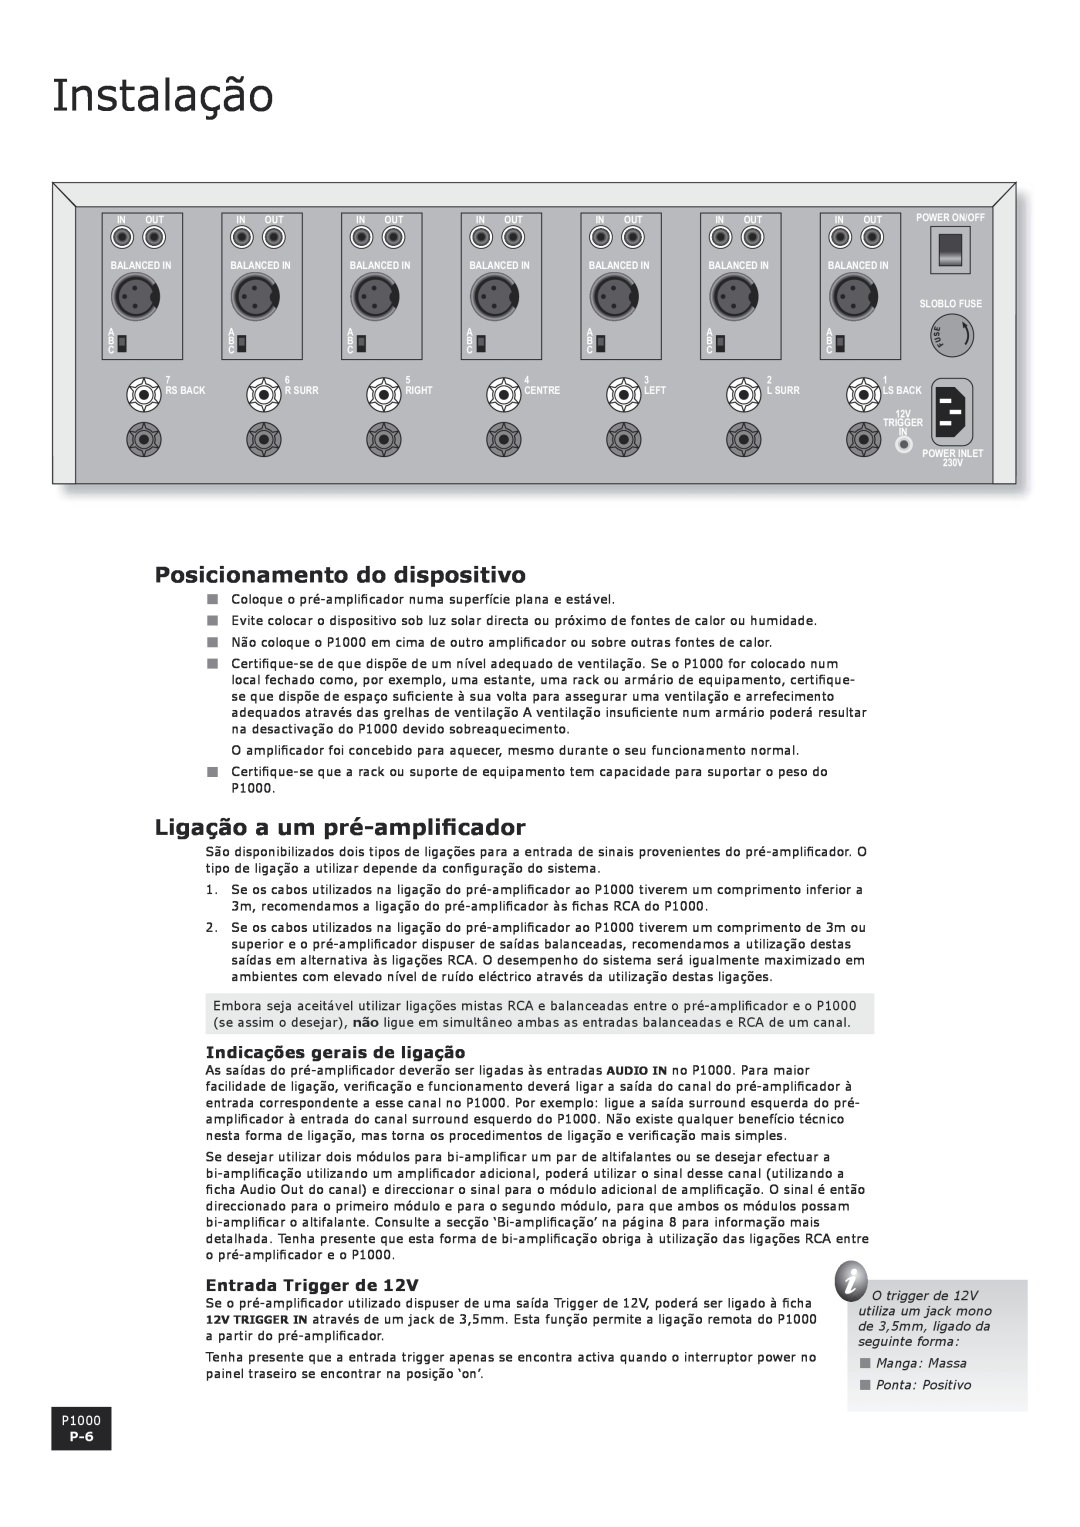 Arcam P1000 manual Instalação, Posicionamento do dispositivo, Ligação a um pré-amplificador, Indicações gerais de ligação 